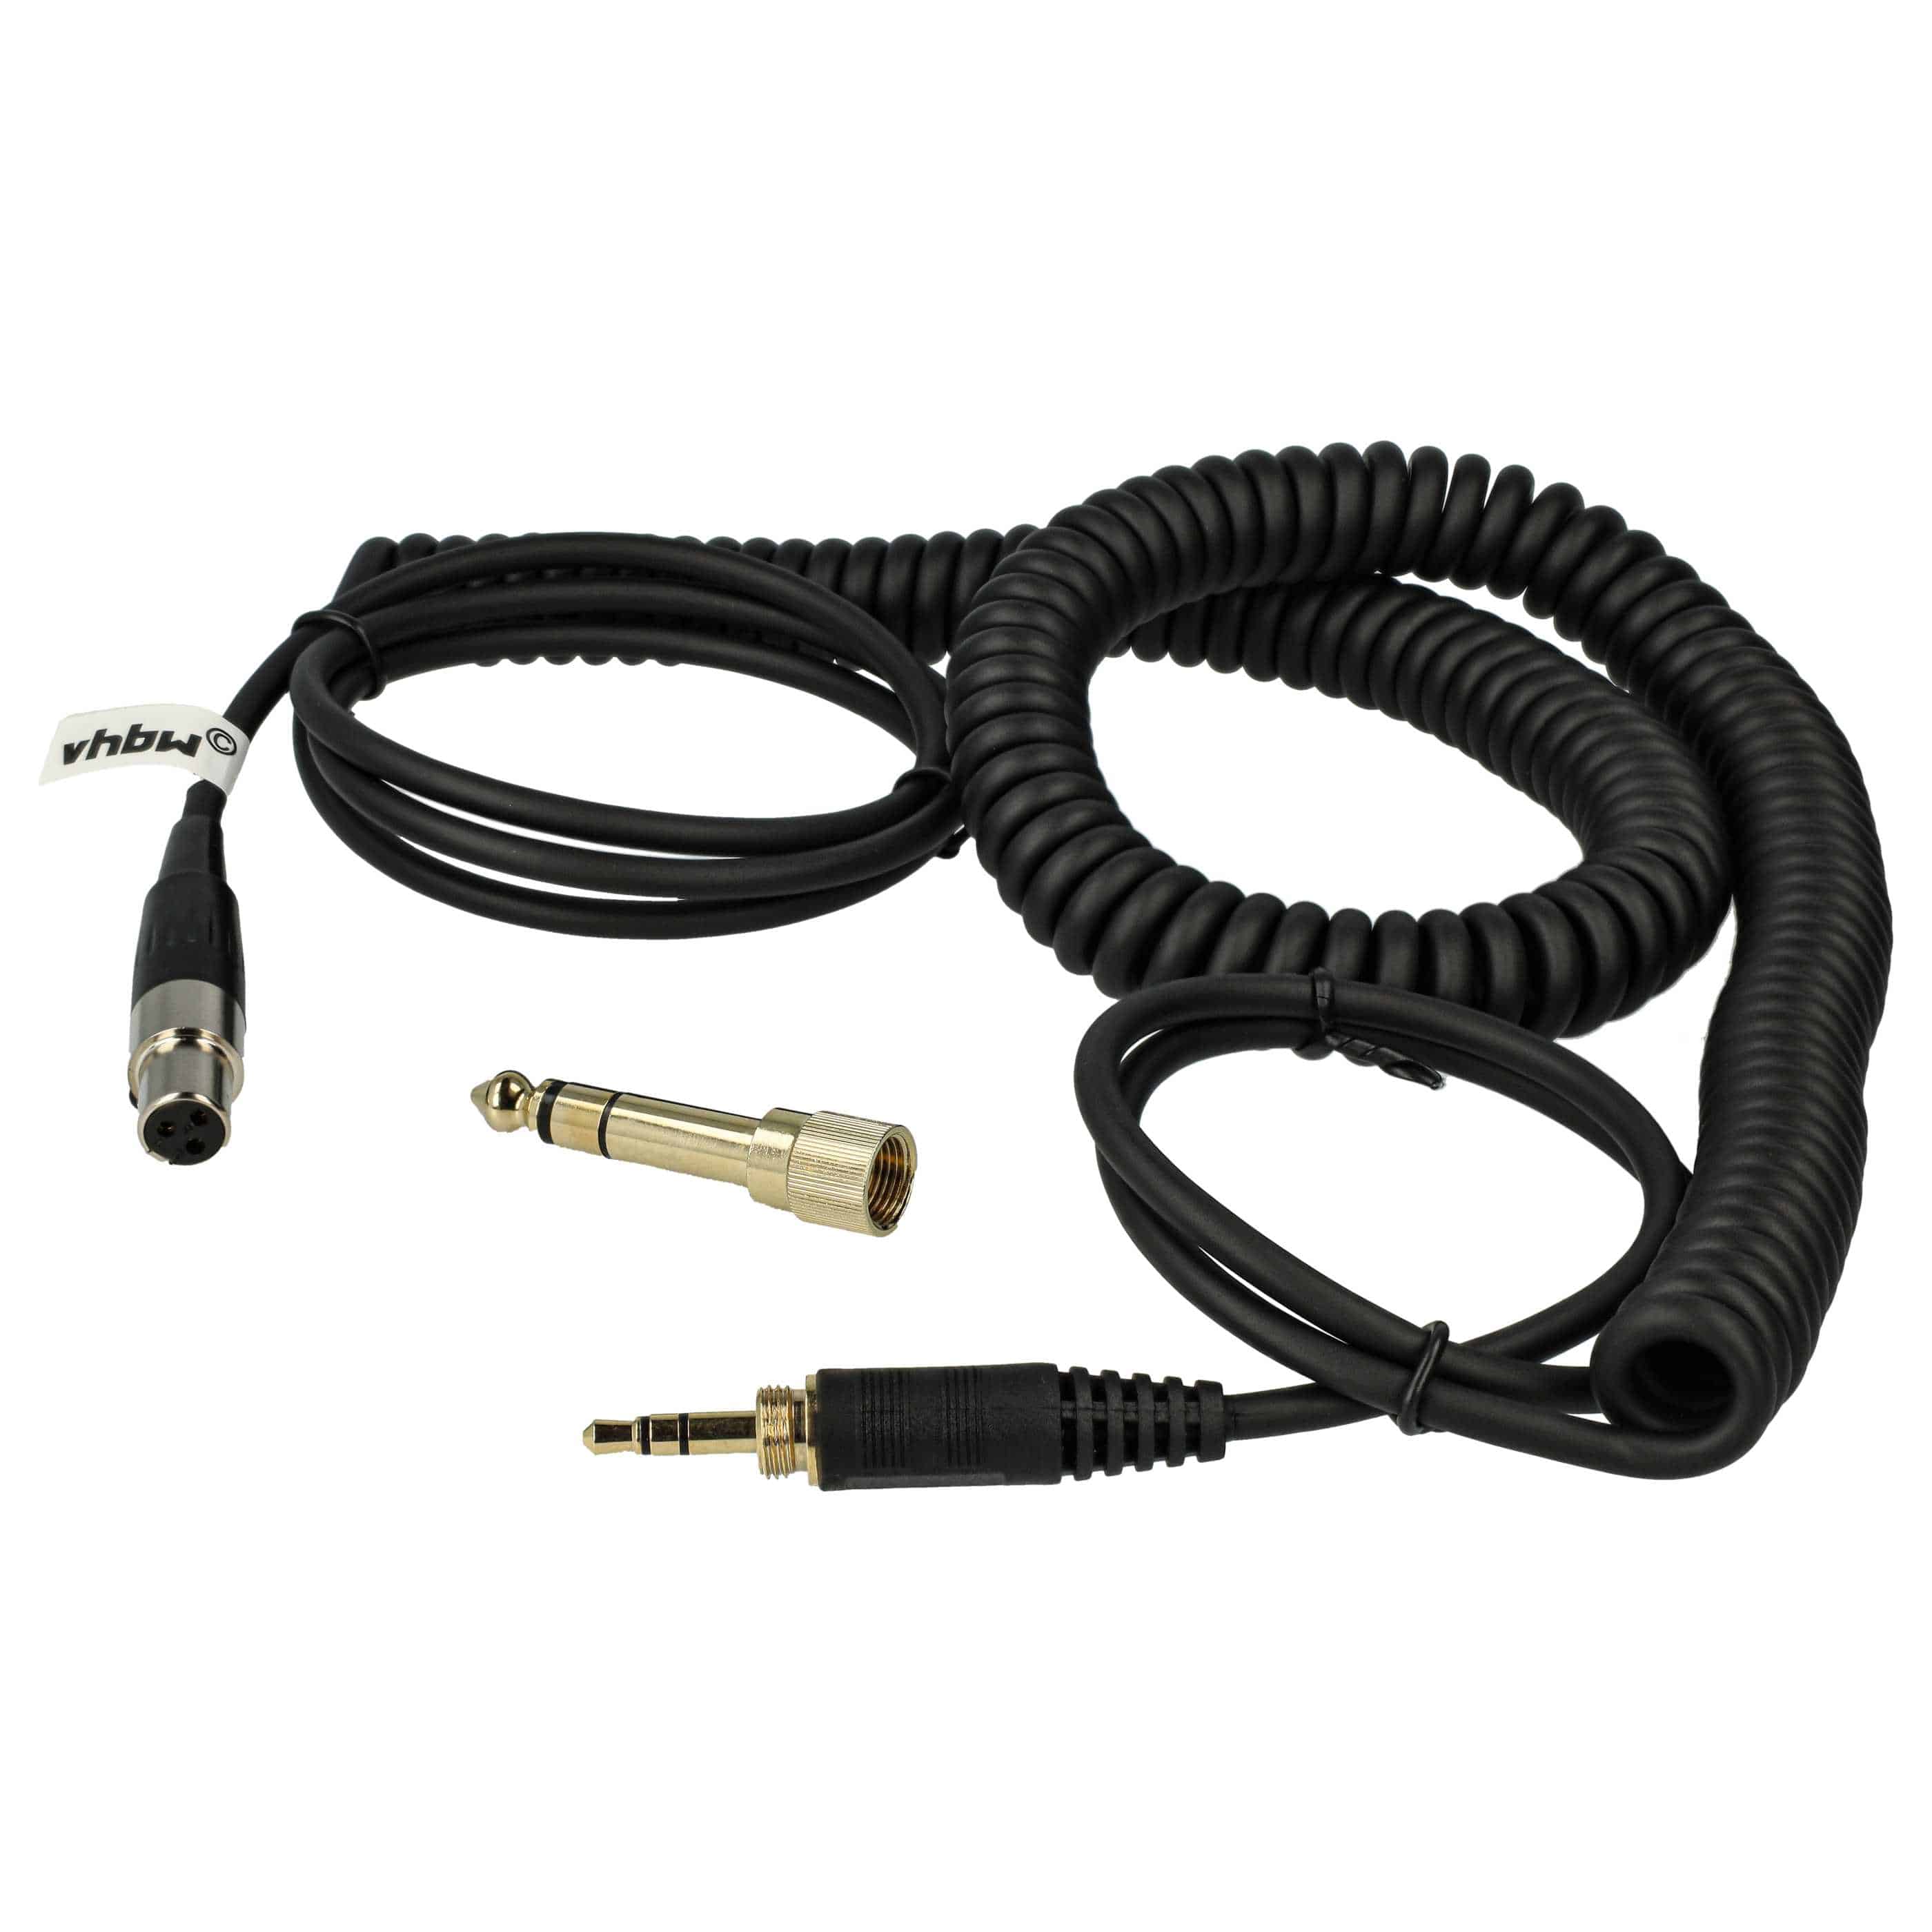 Headphones Cable suitable for AKG / Pioneer K240 MK II etc., 100 - 300 cm